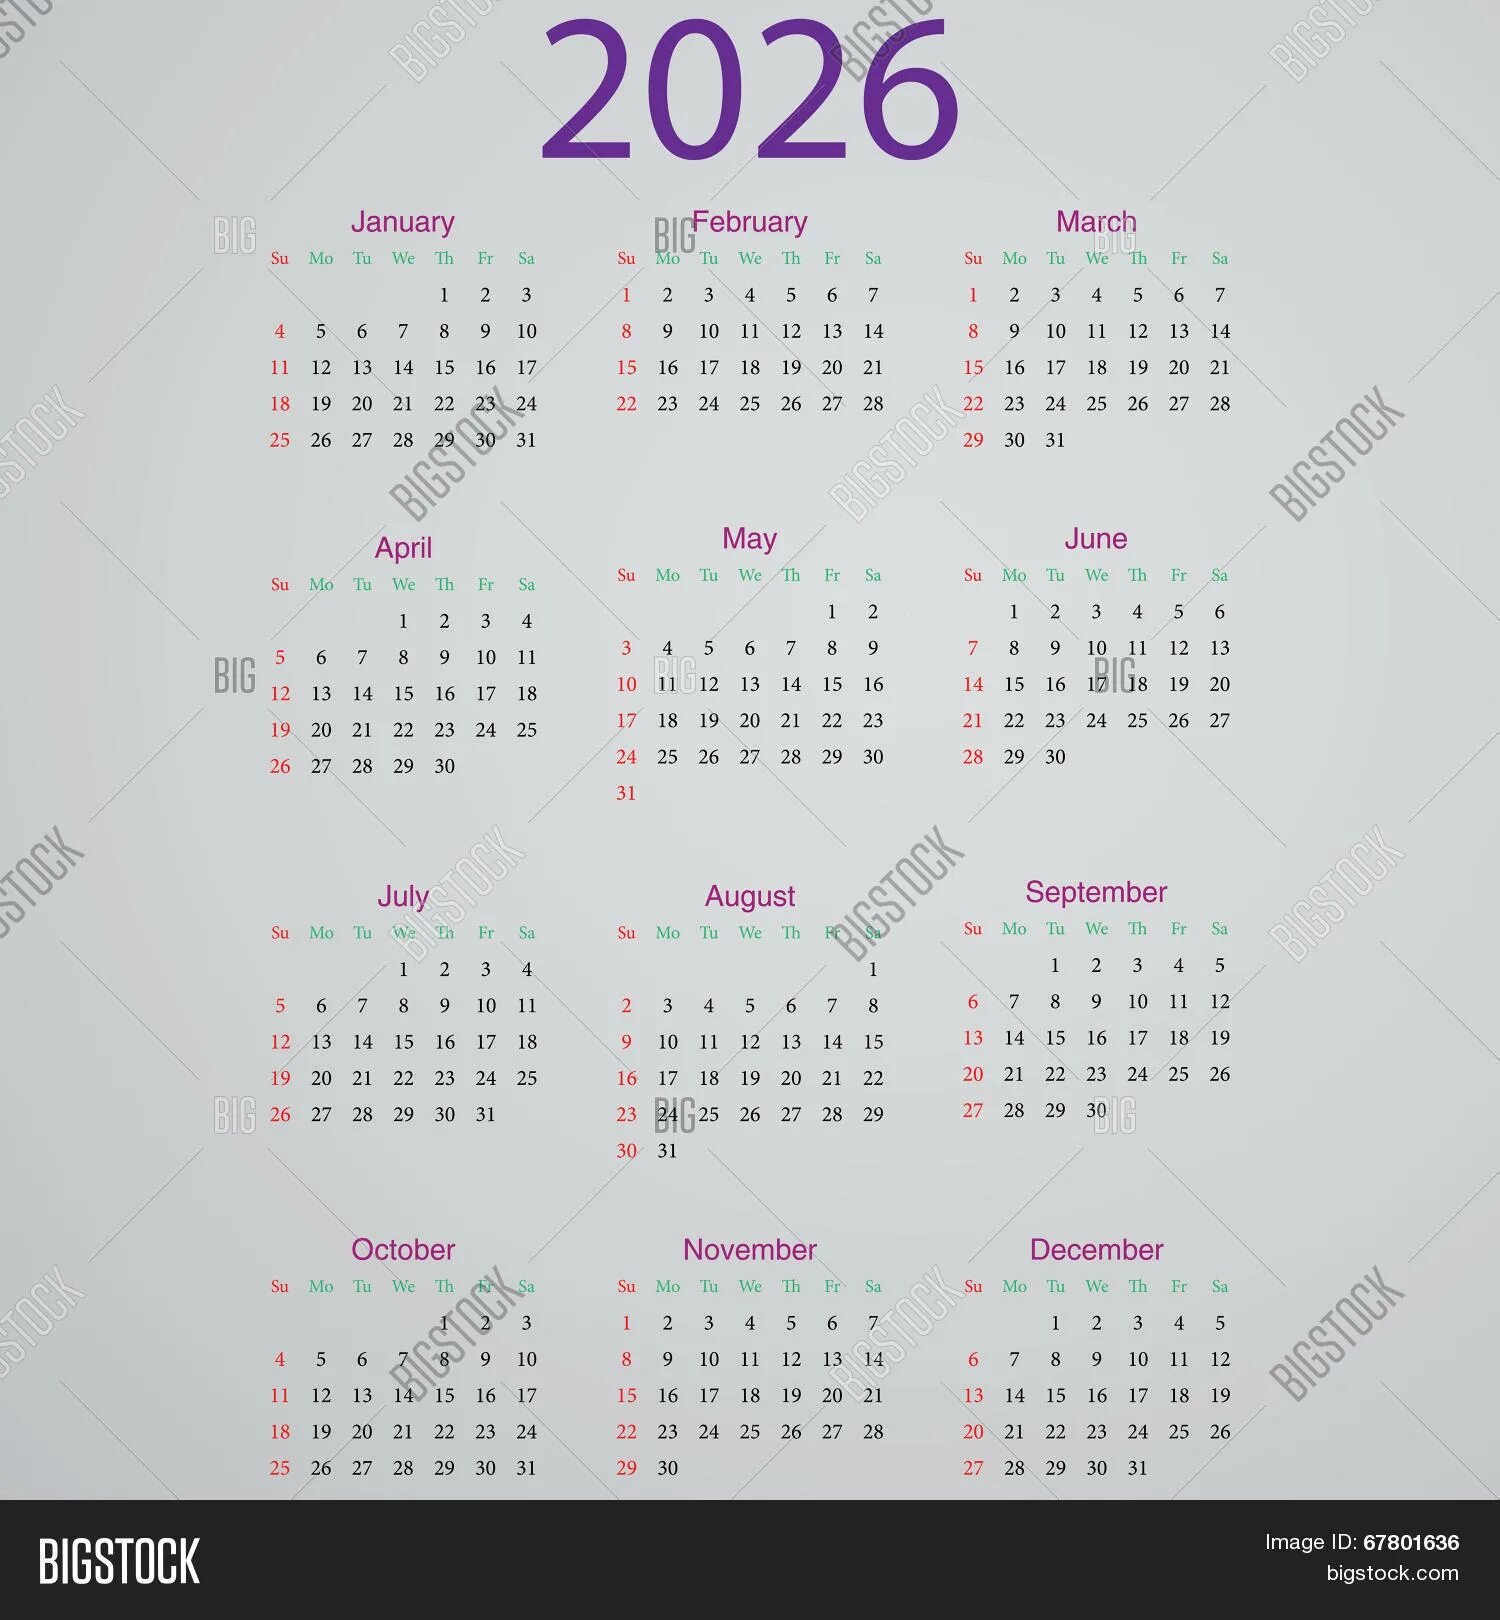 Календарики на 2026 год. Календарь 2037 года. Календарь календарь на 2026 год. Календарь 2043 года. Календарь 2033